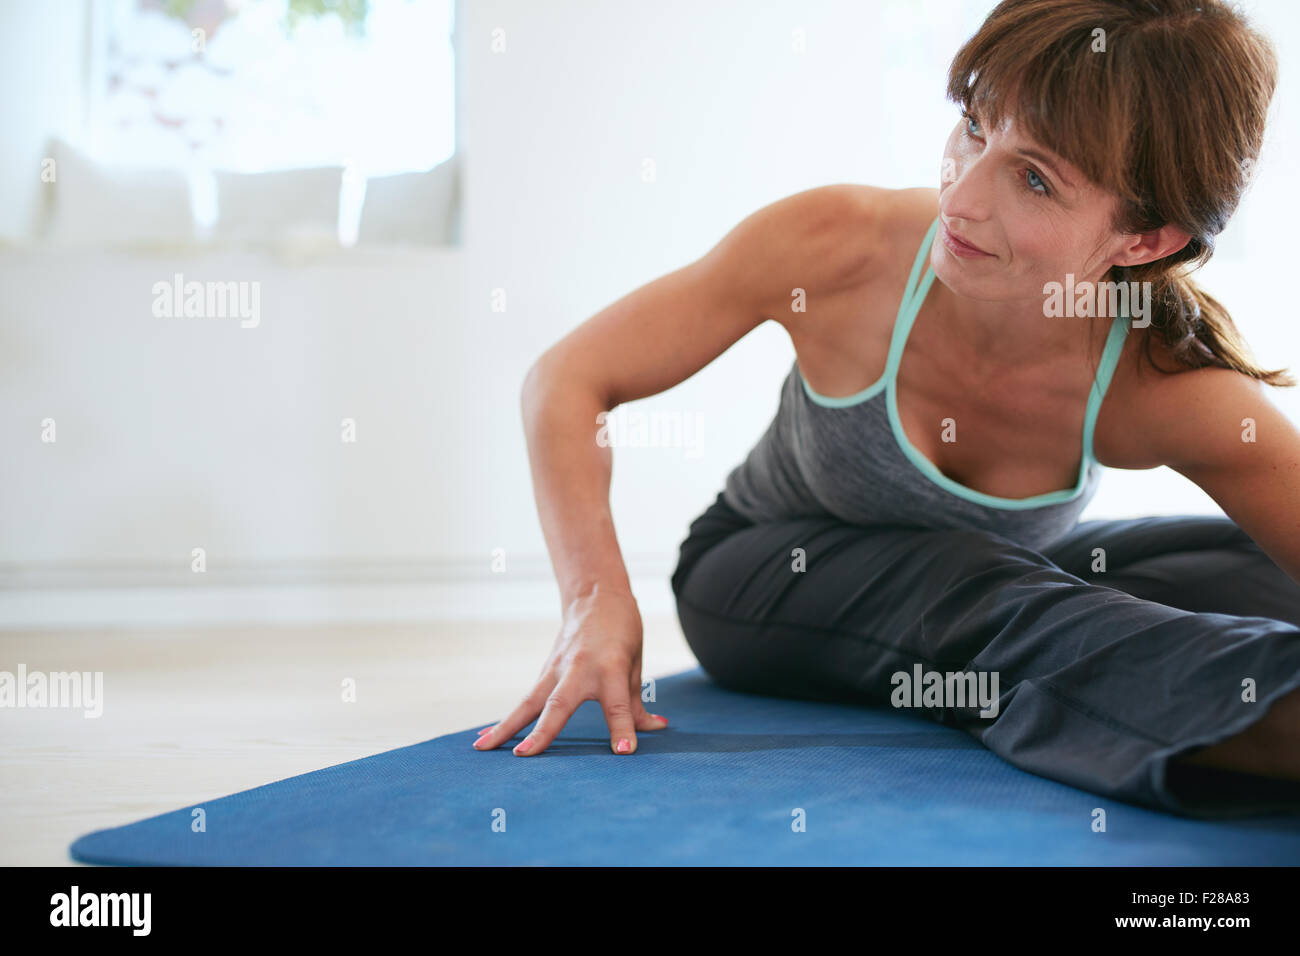 Image de la femme se pencher vers l'avant faisant du yoga . Fitness woman practicing yoga on exercise mat à gym à l'hôtel. Banque D'Images